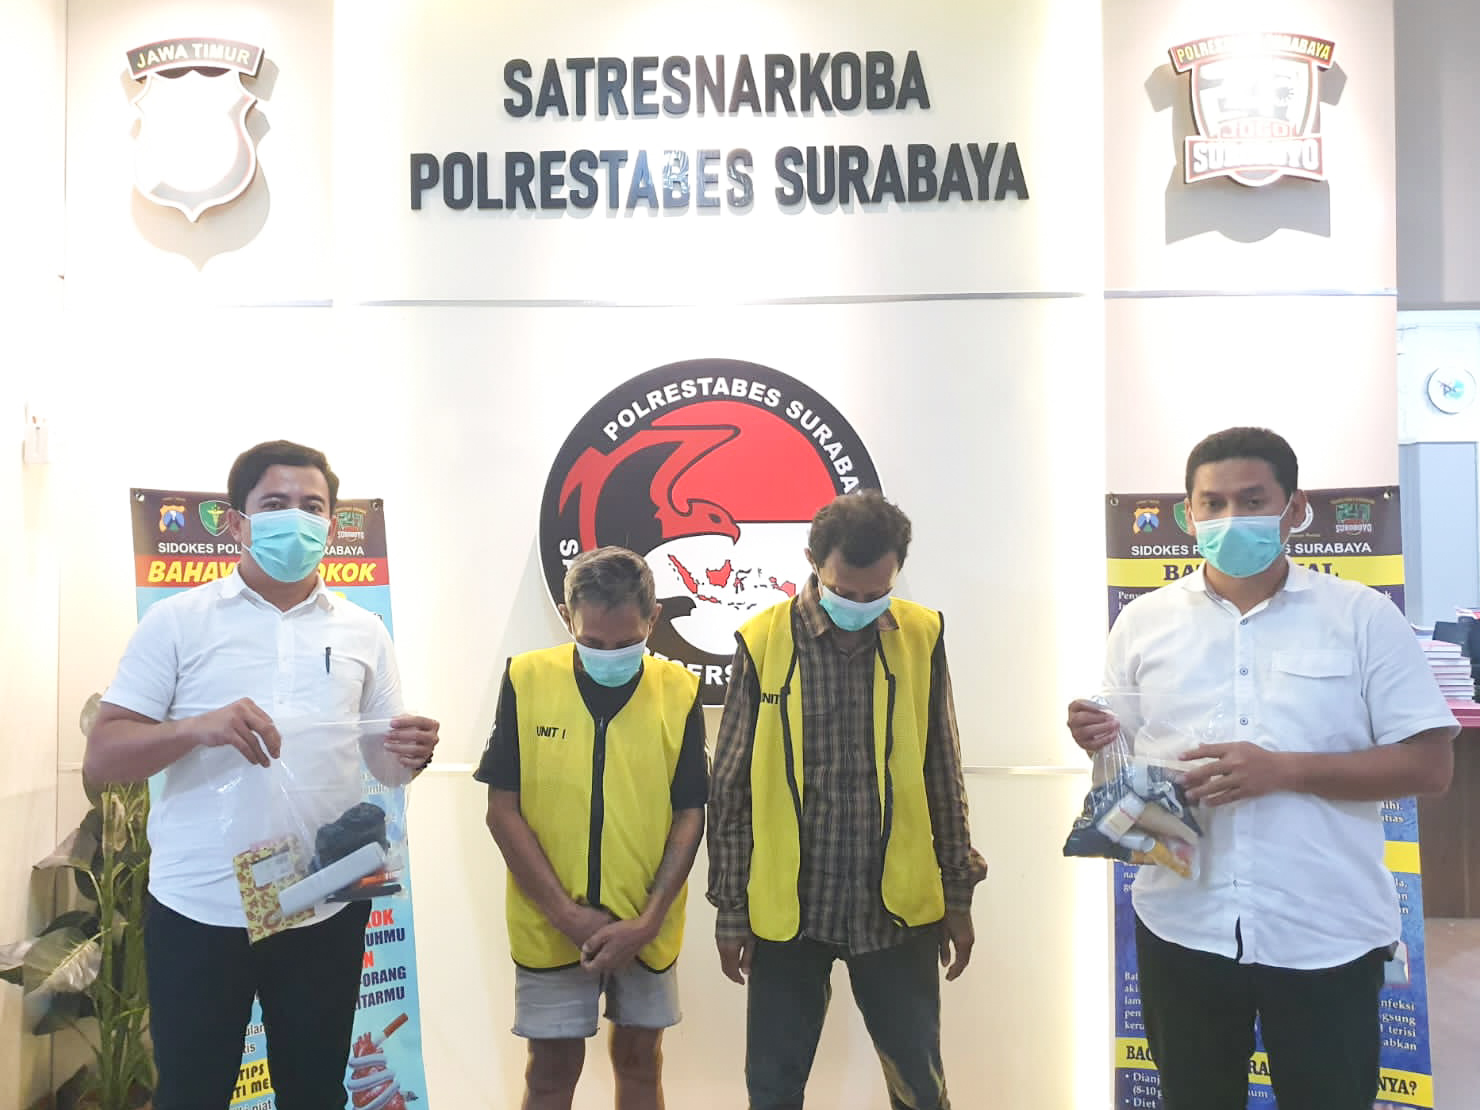 Edarkan sabu, Dua Pria Paruh Baya Dibekuk Satresnarkoba Polrestabes Surabaya